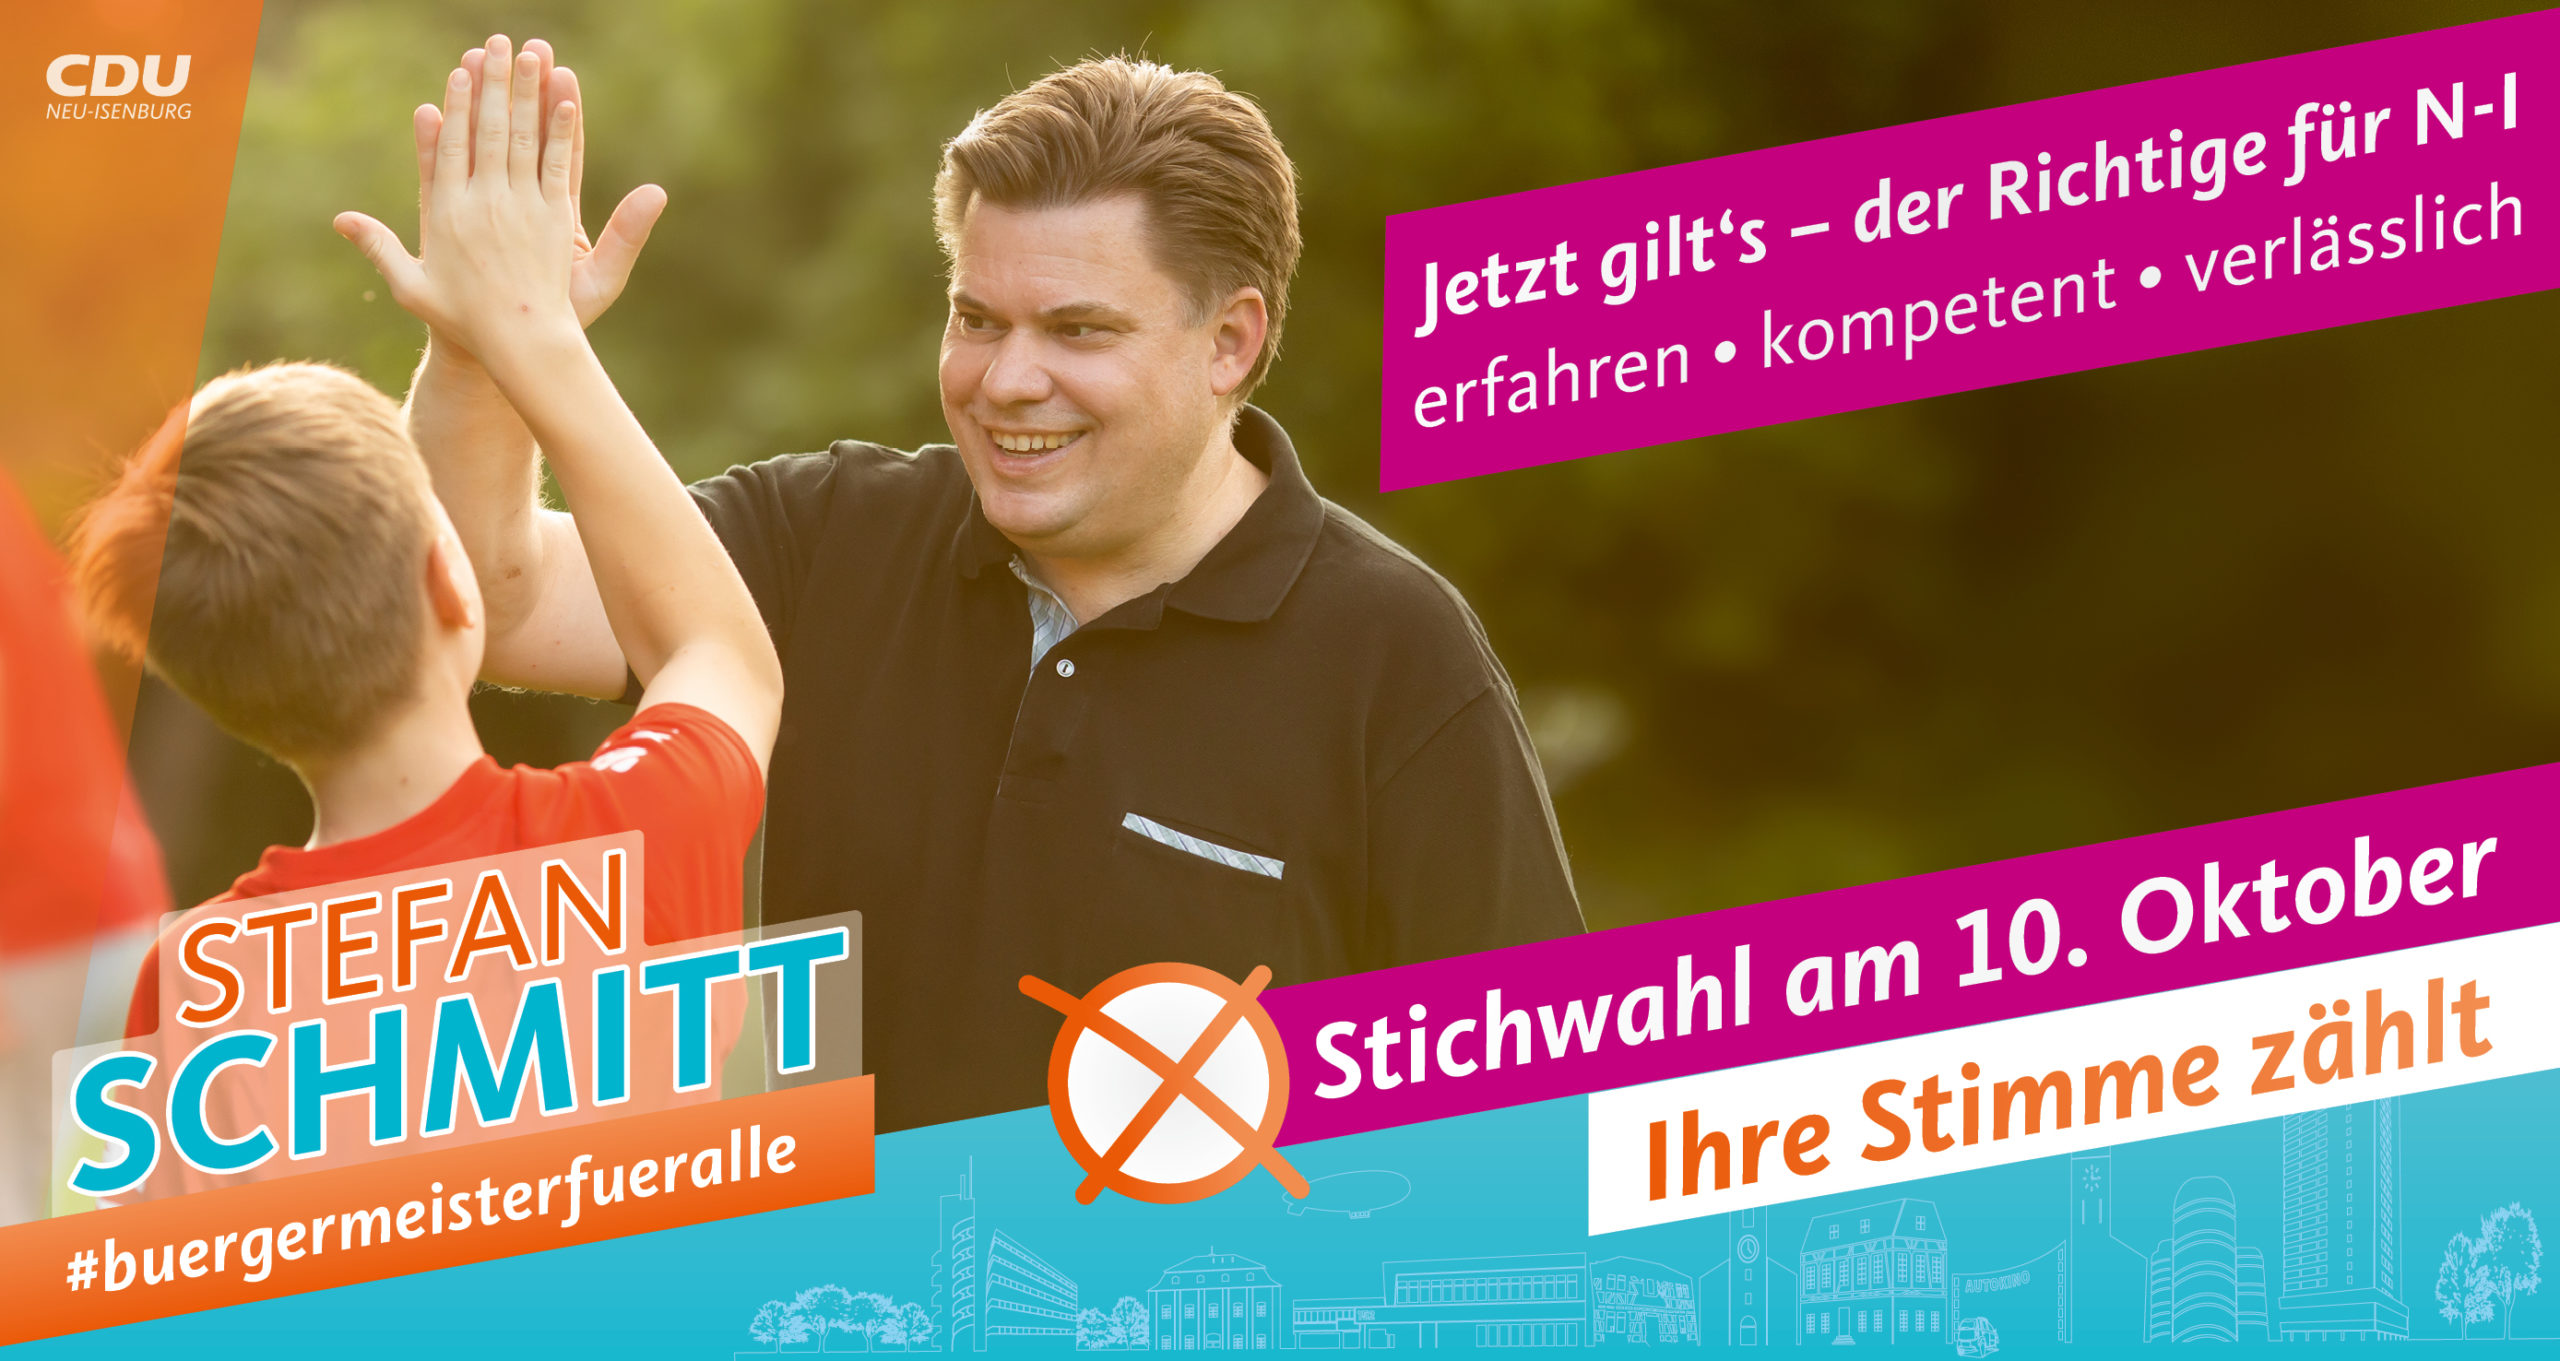 Postkarte zur Stichwahl: Jetzt gilt's - der Richtige für Neu-Isenburg - erfahren, kompetent, verlässlich, Stichwahl am 10. Oktober, Ihre Stimme zählt